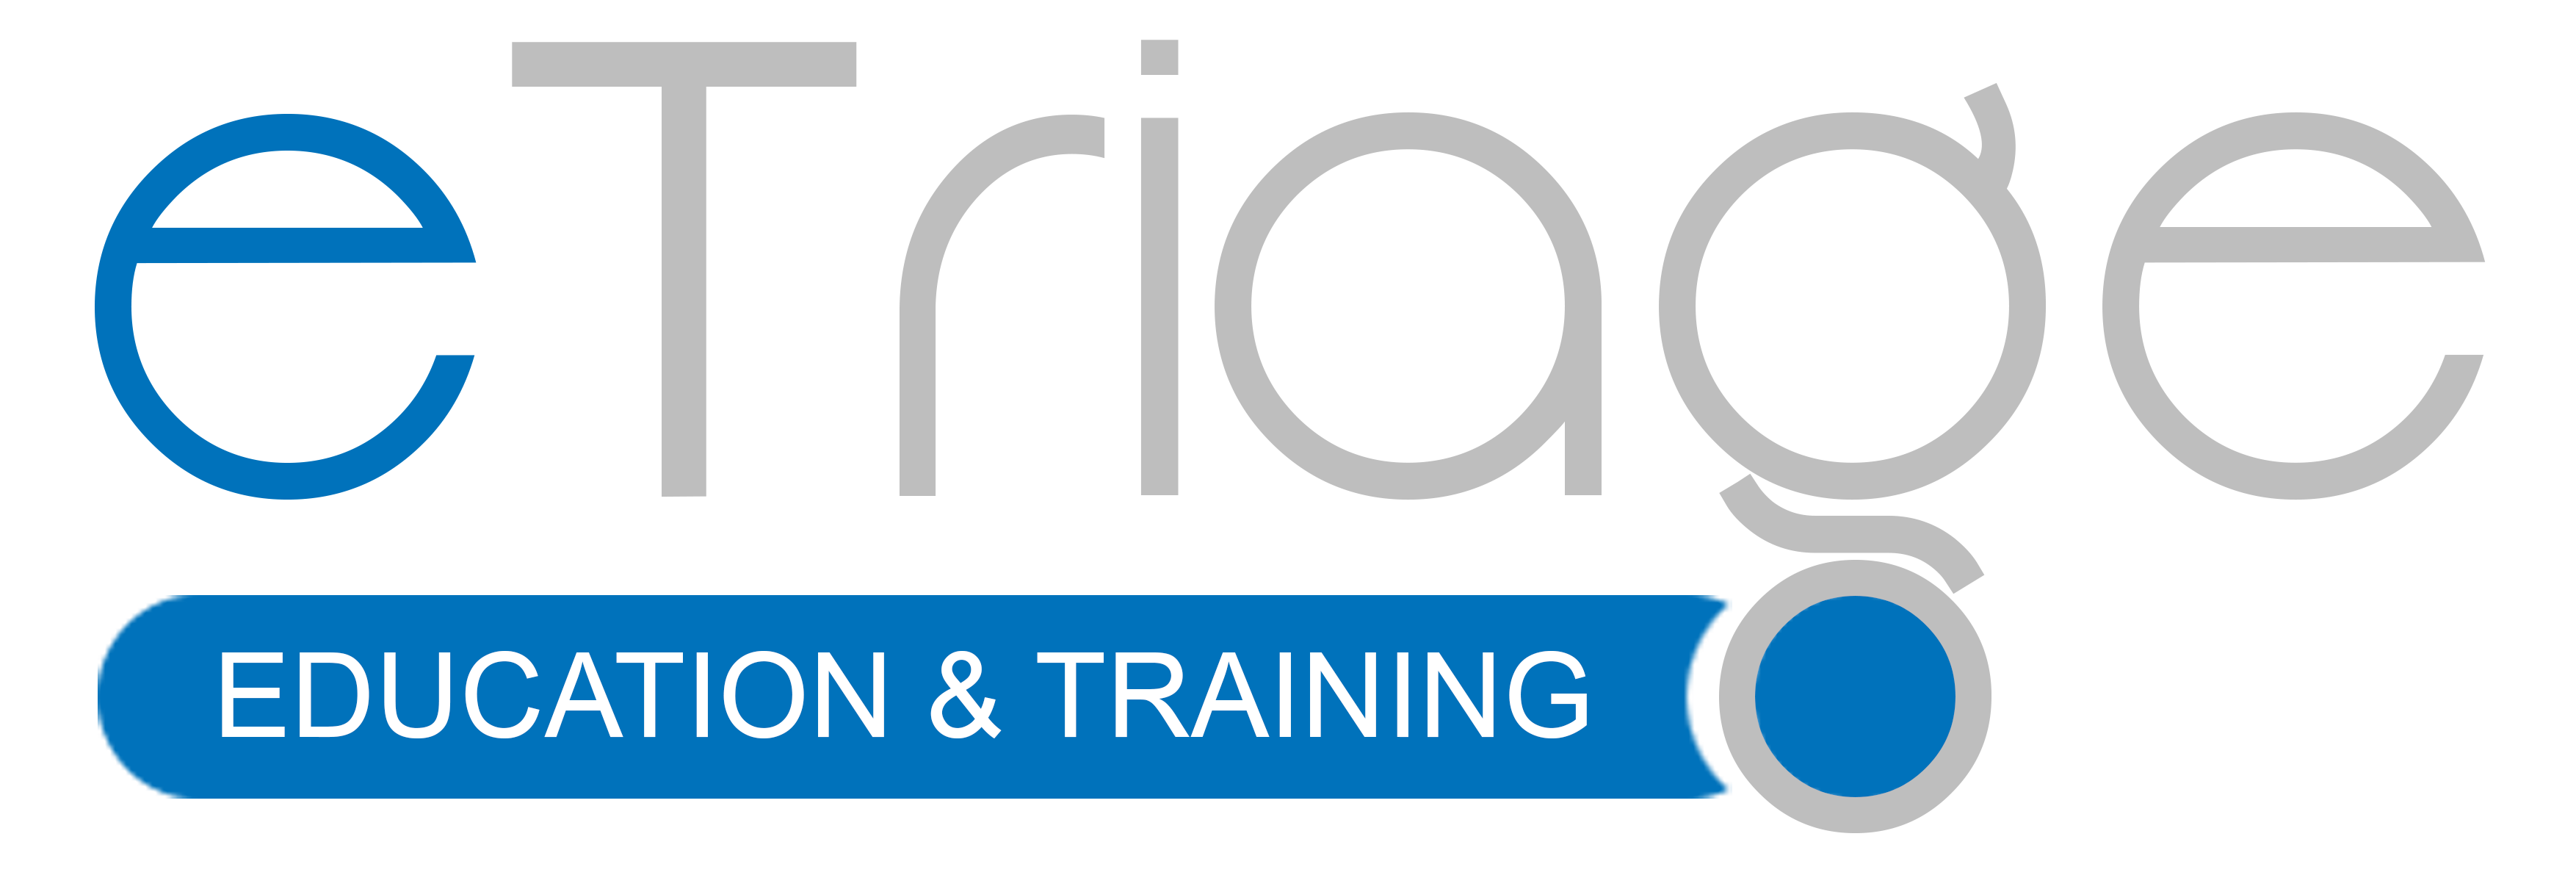 Etriage Occupational & Technical Skills Training LLC Logo